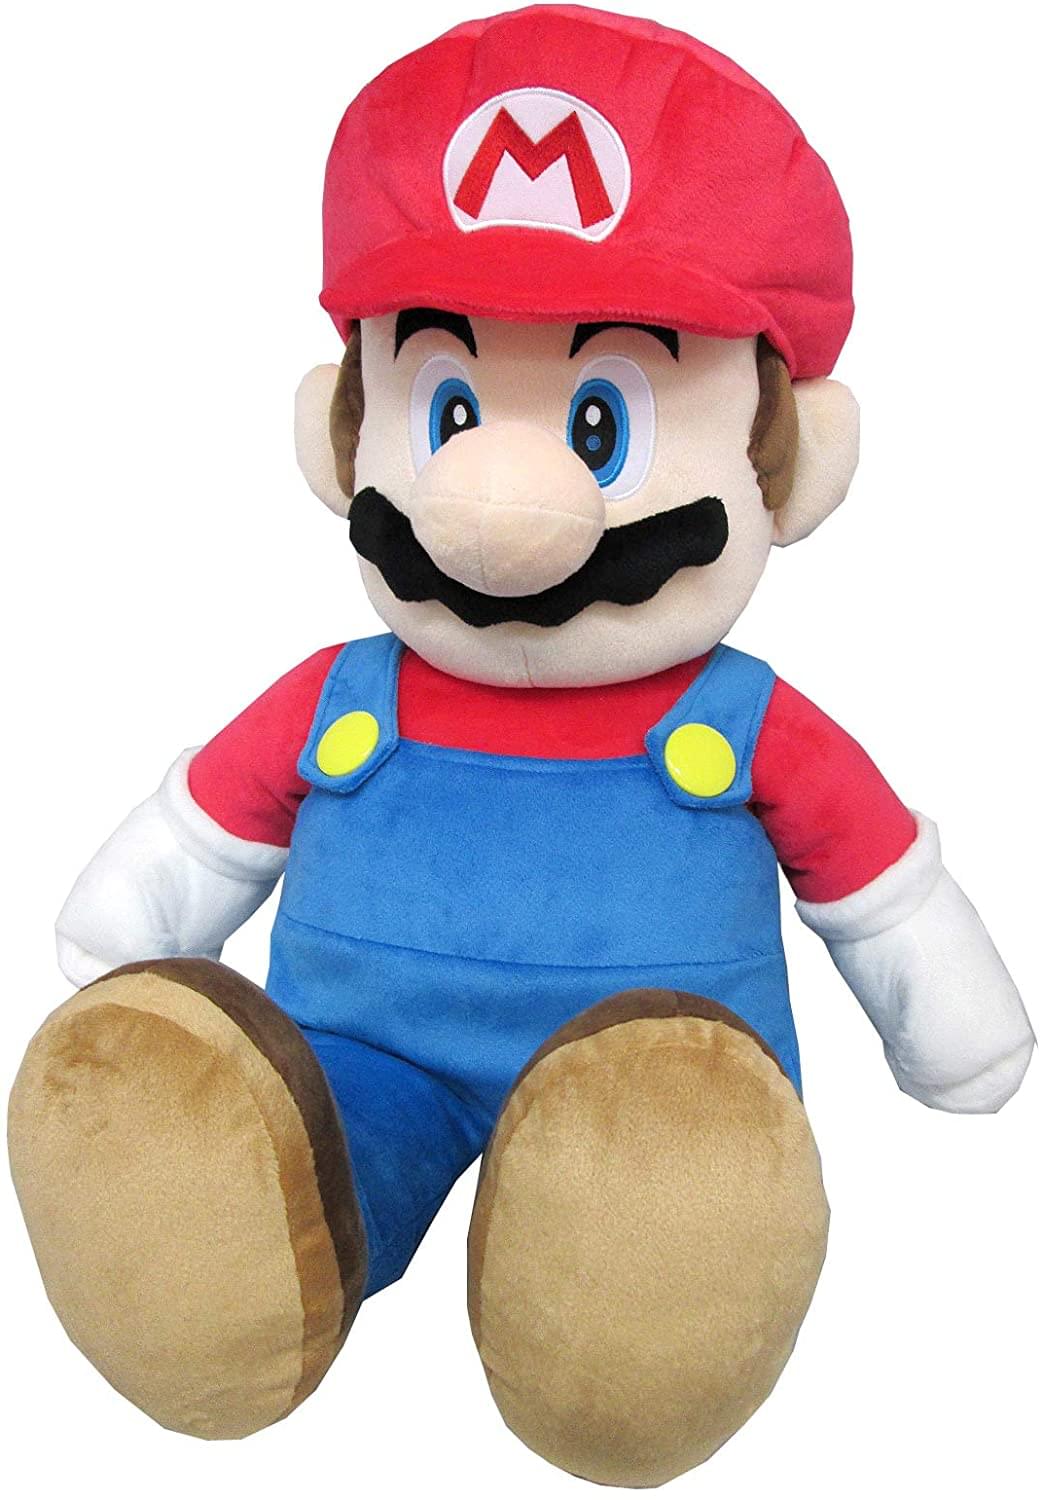 Super Mario All Star Collection 24 Inch Plush | Mario